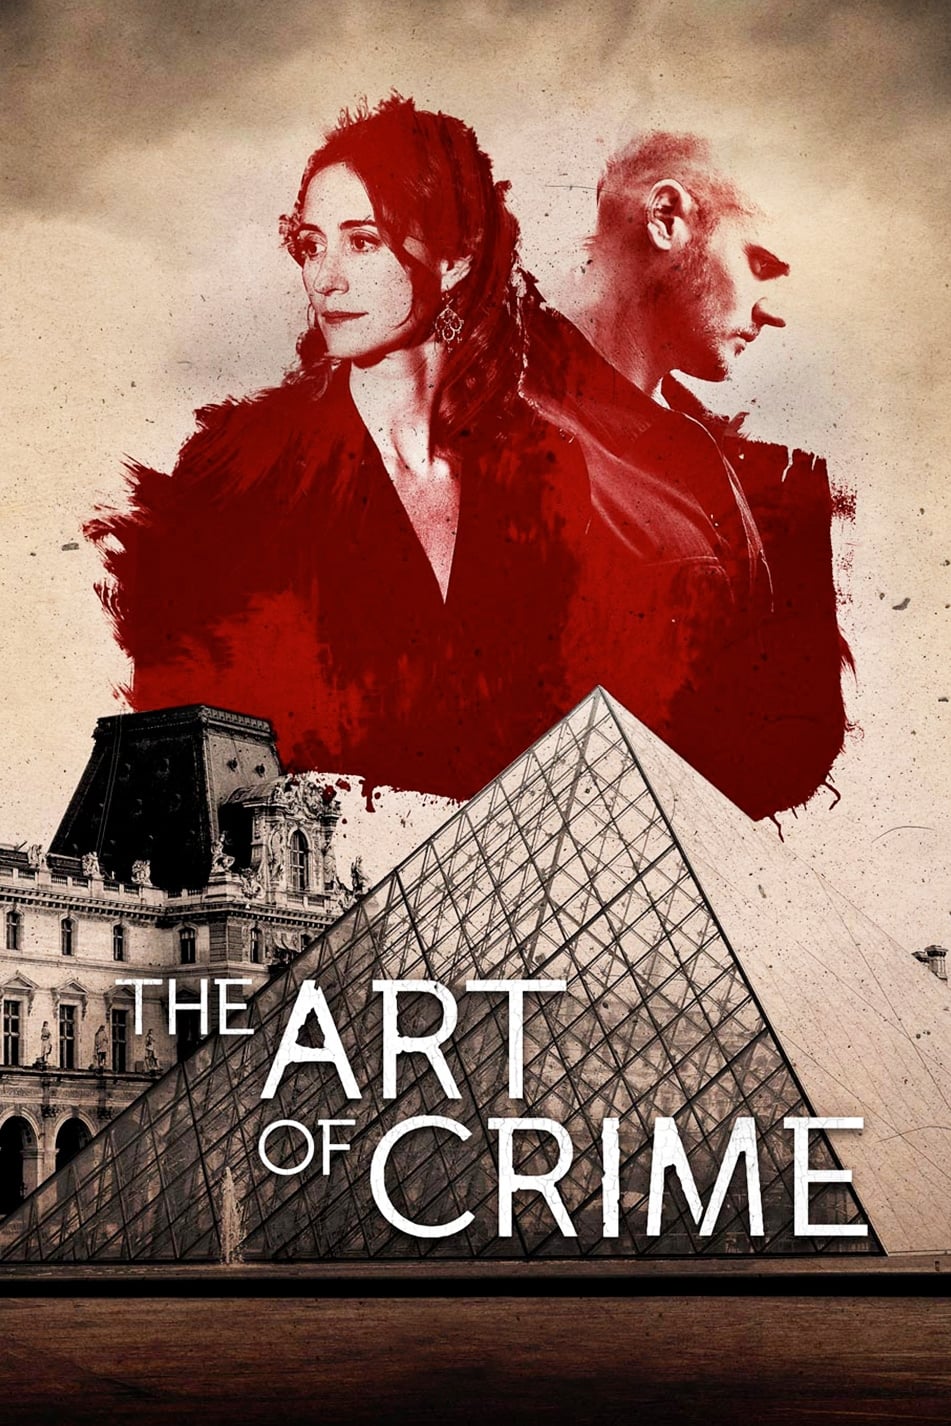 Art of Crime